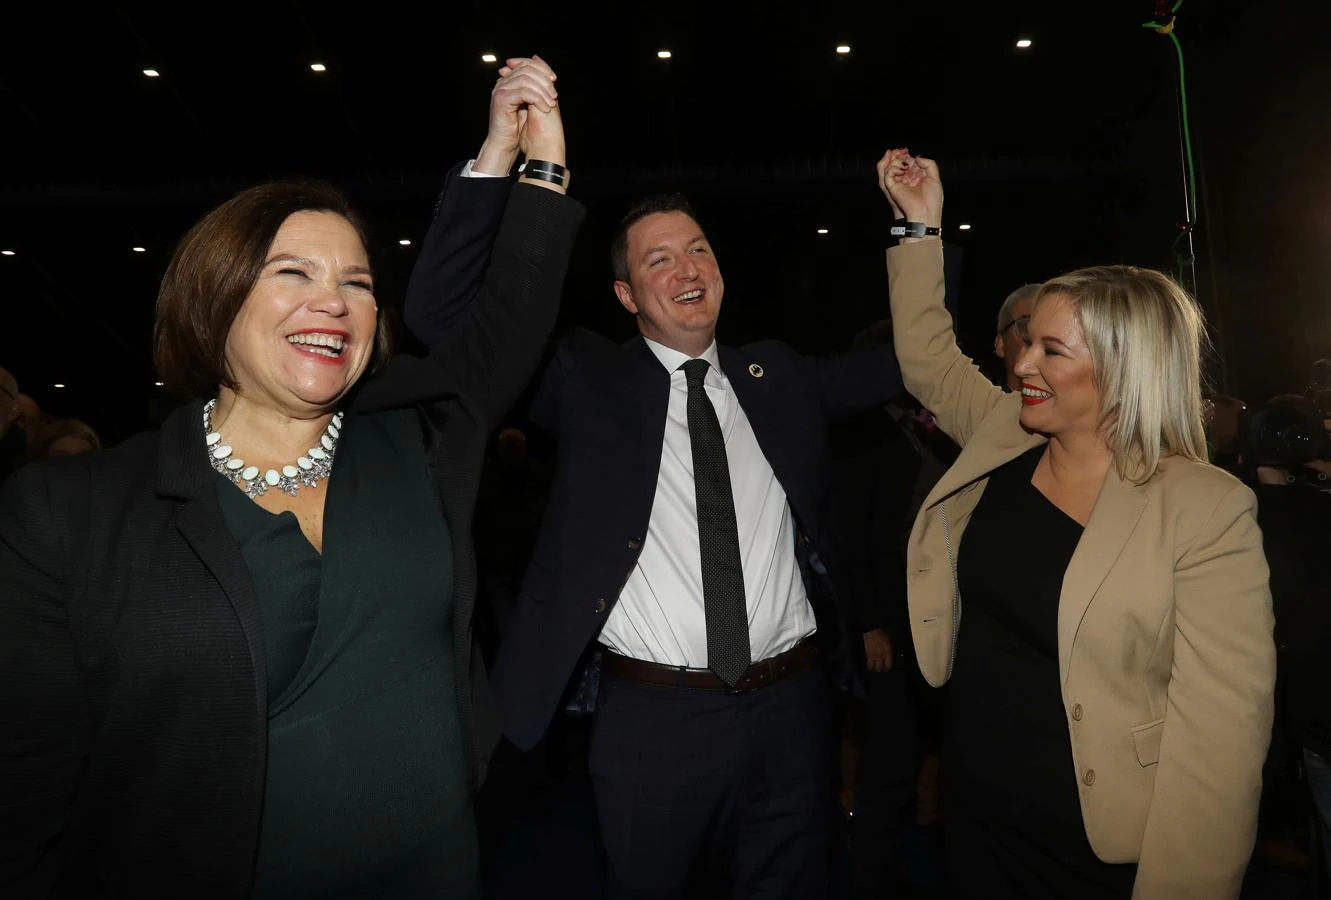 Los líderes del Sinn Féin (SF), antiguo brazo político del IRA, celebran los resultados obtenidos en Irlanda del Norte. Conservan los siete escaños si bien no los ocupan porque se niegan a jurar lealtad a la corona. En el centro, el candidato John Finucane. 